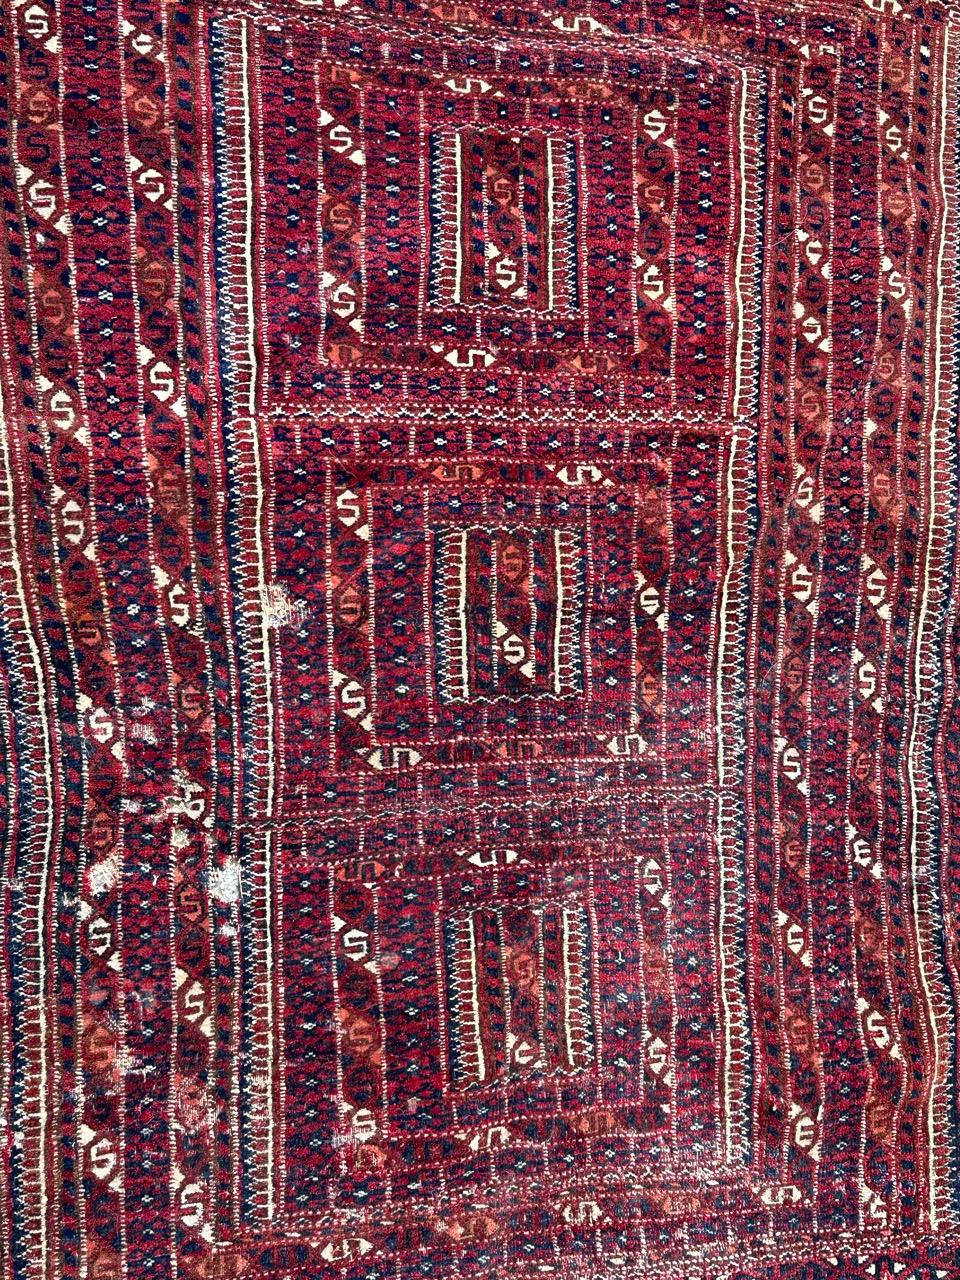 Très beau tapis turkmène ancien avec de beaux motifs tribaux géométriques et stylisés et de belles couleurs naturelles, avec quelques usures et petits dommages, entièrement et finement noué à la main avec de la laine sur une base de laine.